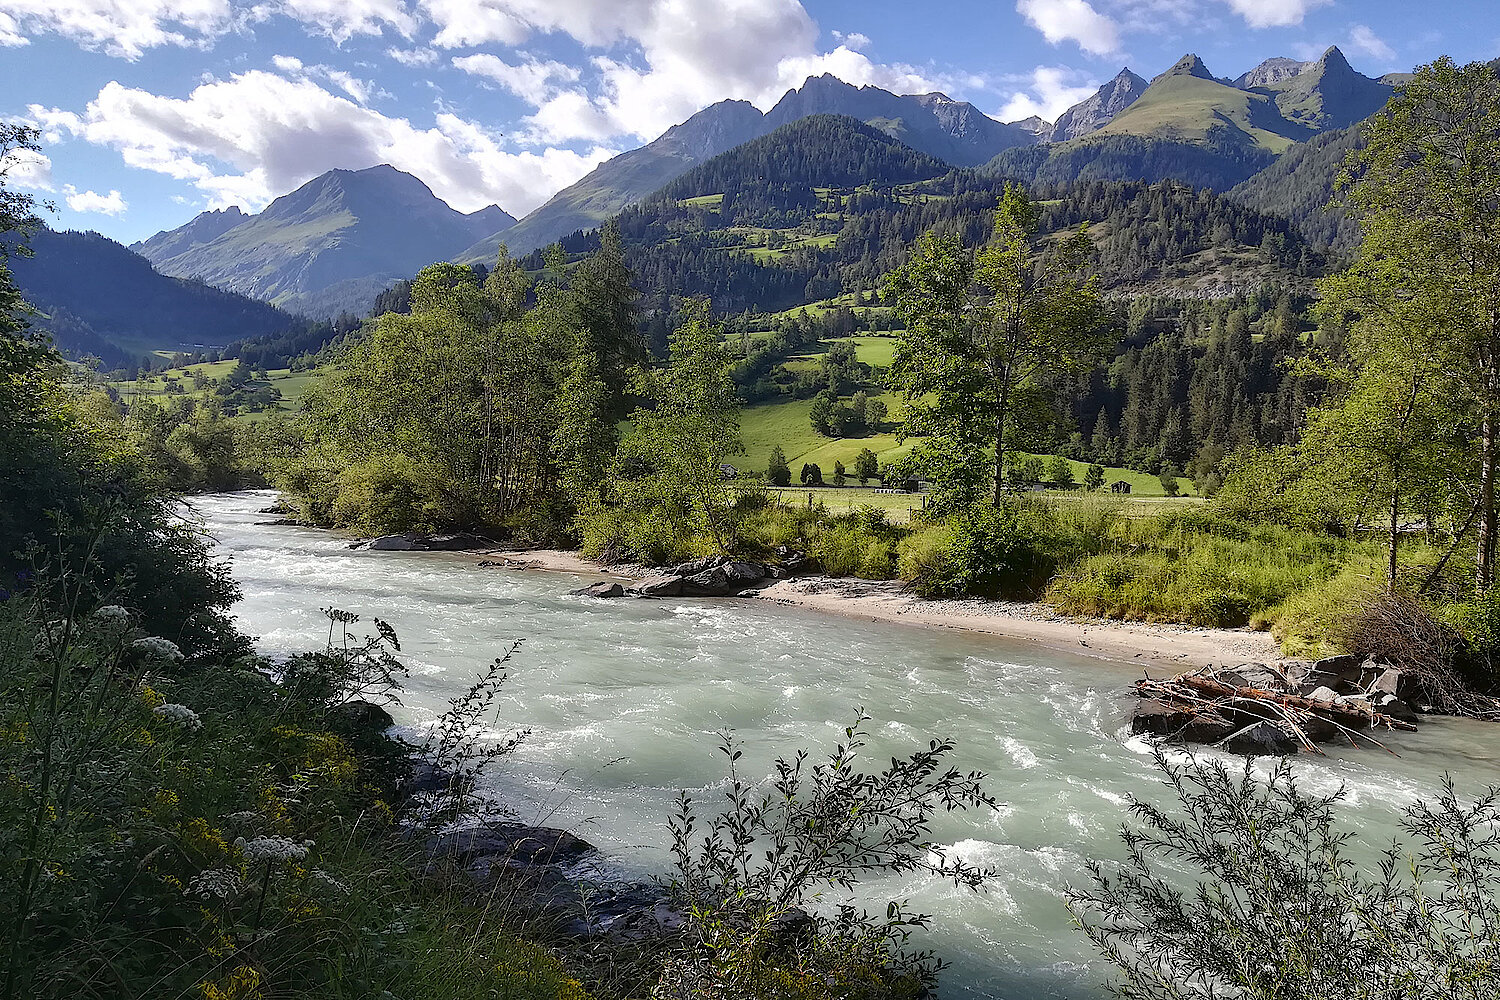 Naturnahe Kulturlandschaft in Osttirol und der Fluss Isel.